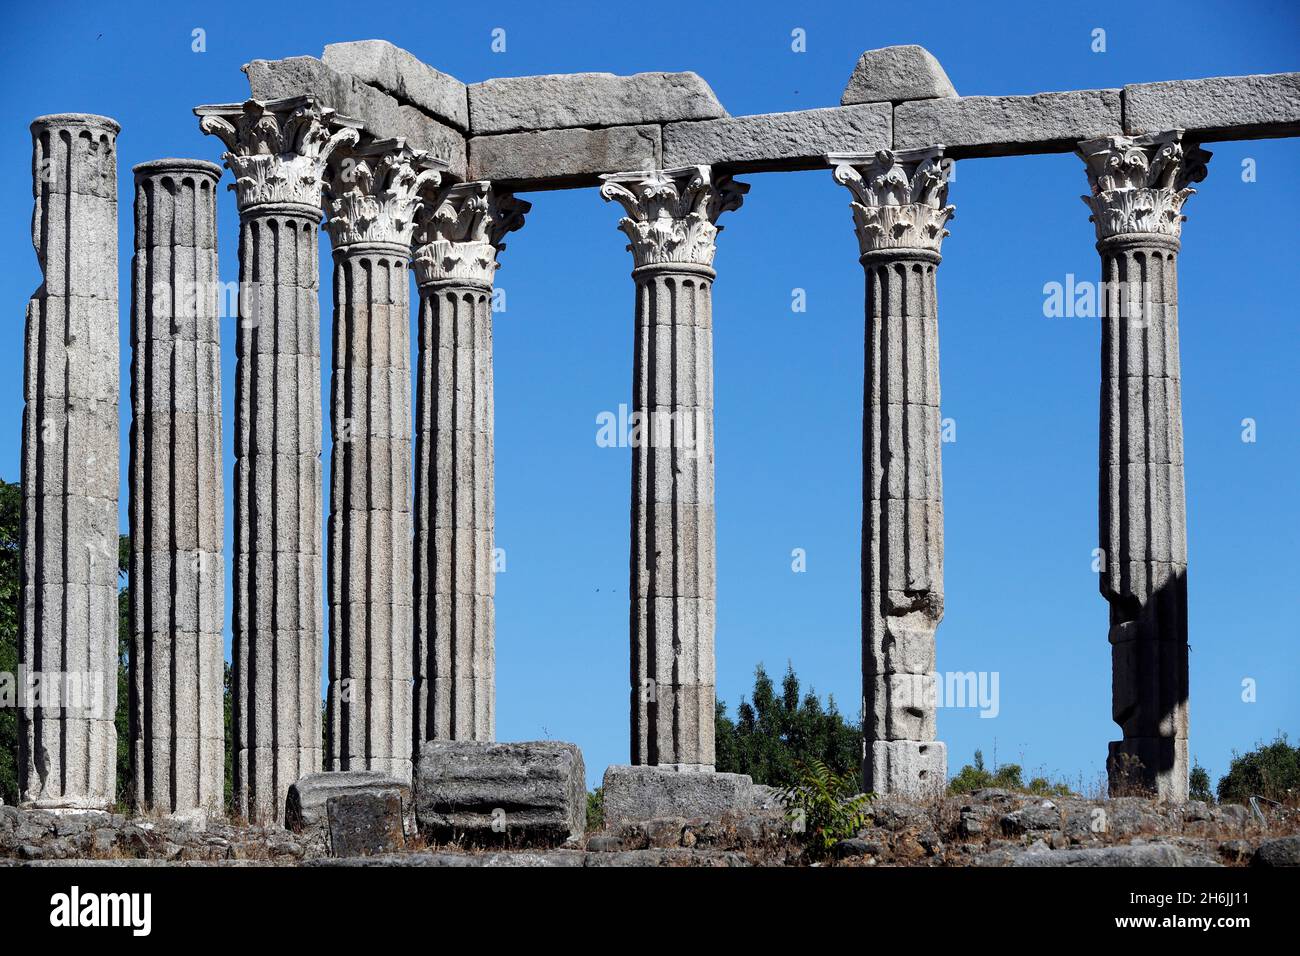 Colonnes corinthiennes du temple romain de Diana, Evora, site du patrimoine mondial de l'UNESCO, Alentejo, Portugal, Europe Banque D'Images